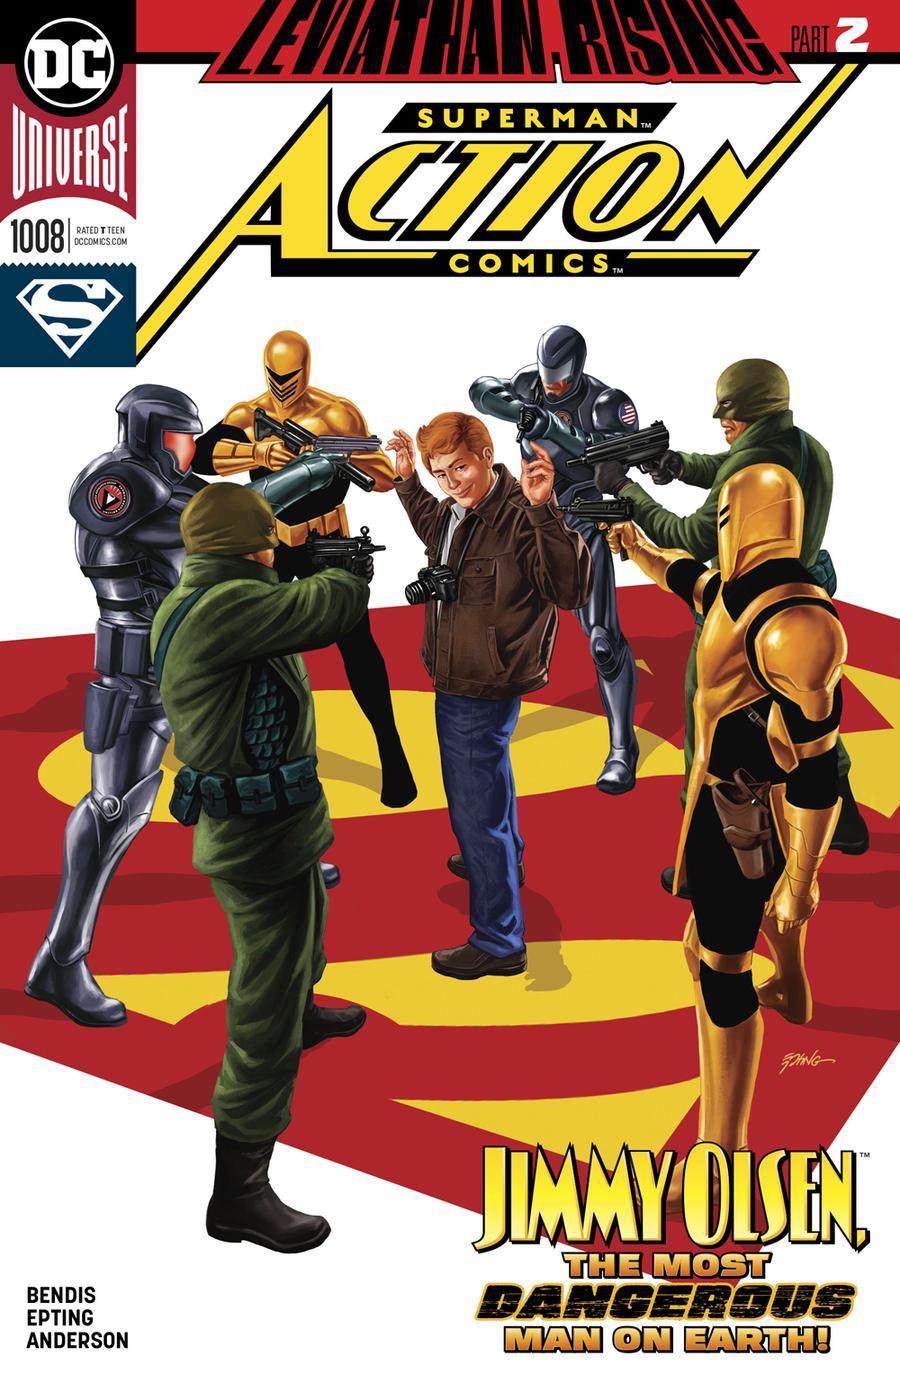 Action Comics Vol. 2 #1008